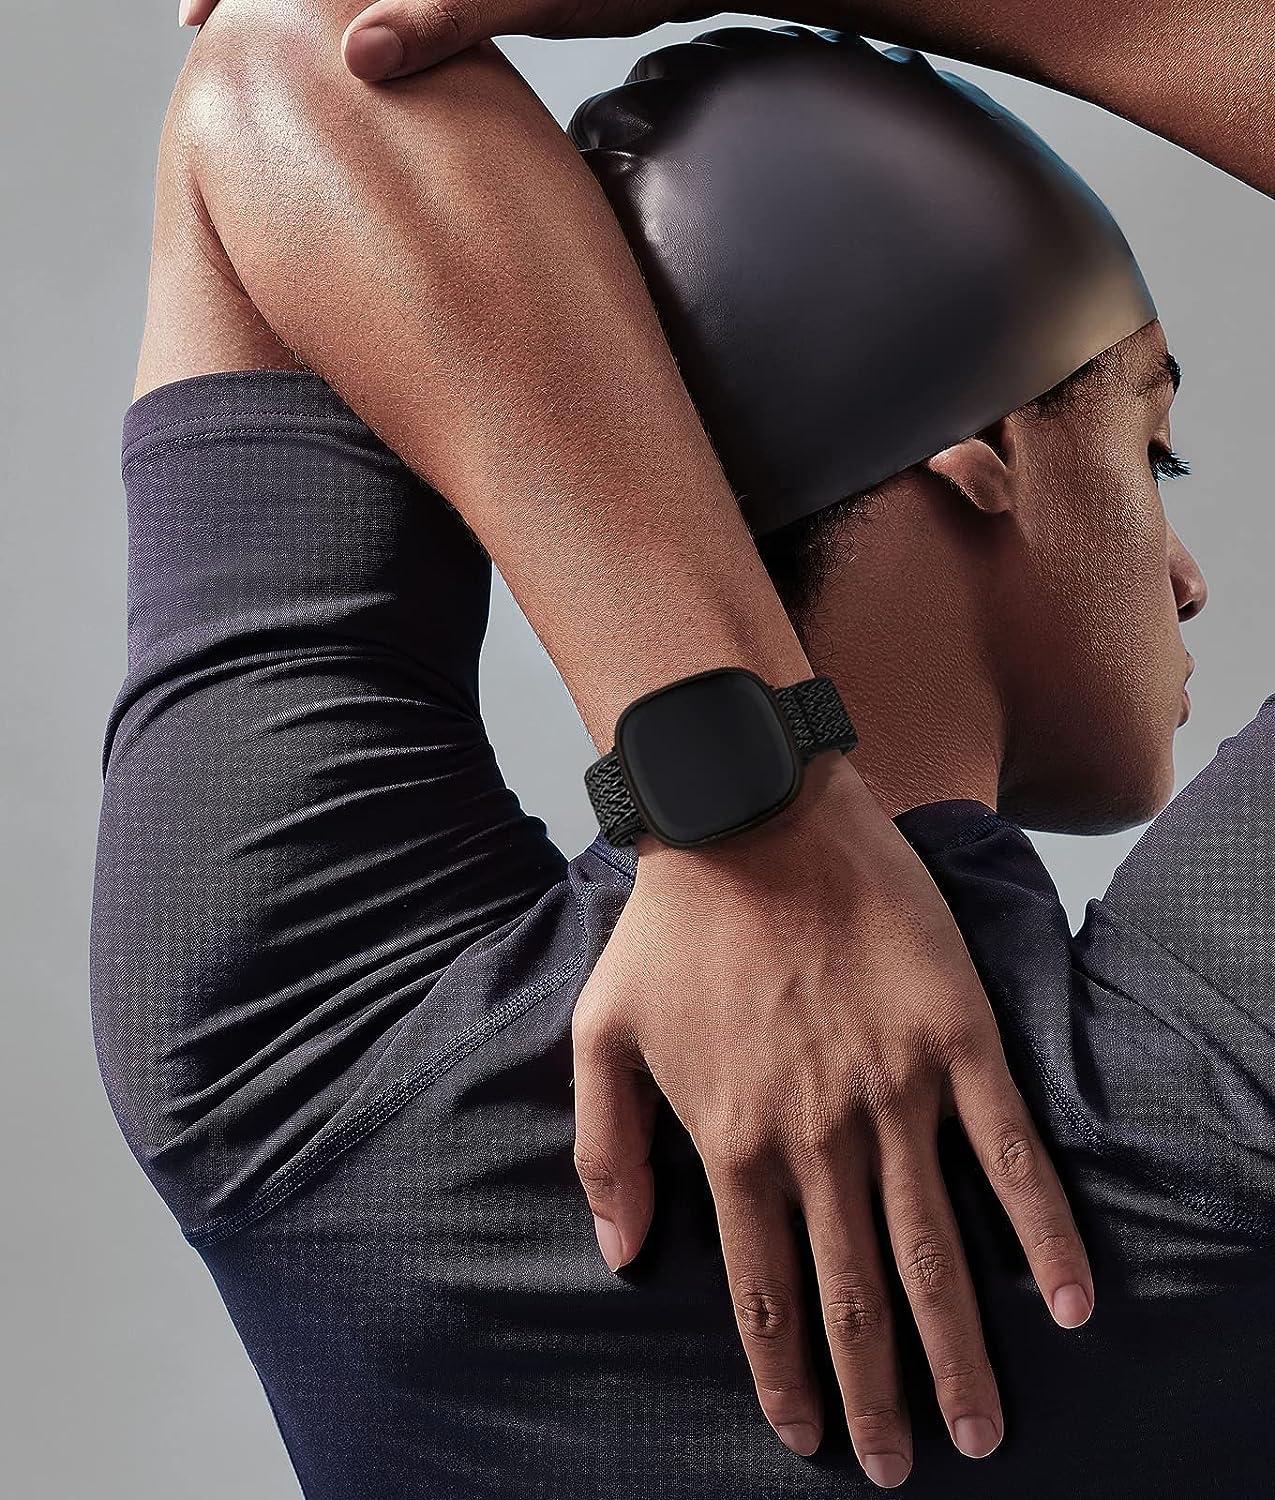 4 Pack Replacement Wristbands for Fitbit Versa 3/Versa 4/Sense/Sense 2  Bands for Women Men 